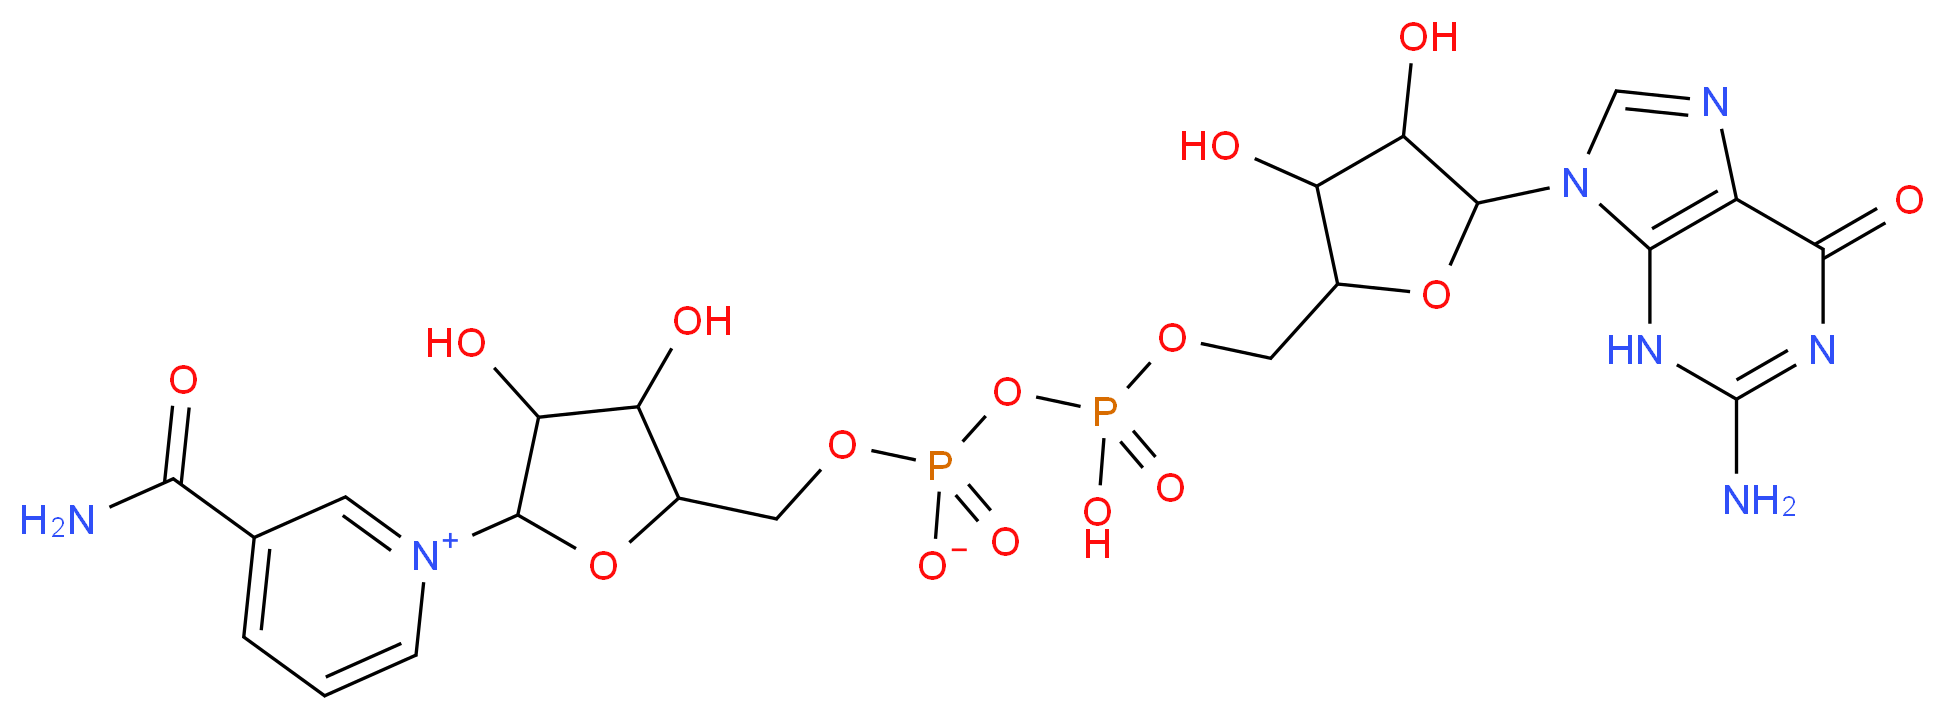 5624-35-1 molecular structure